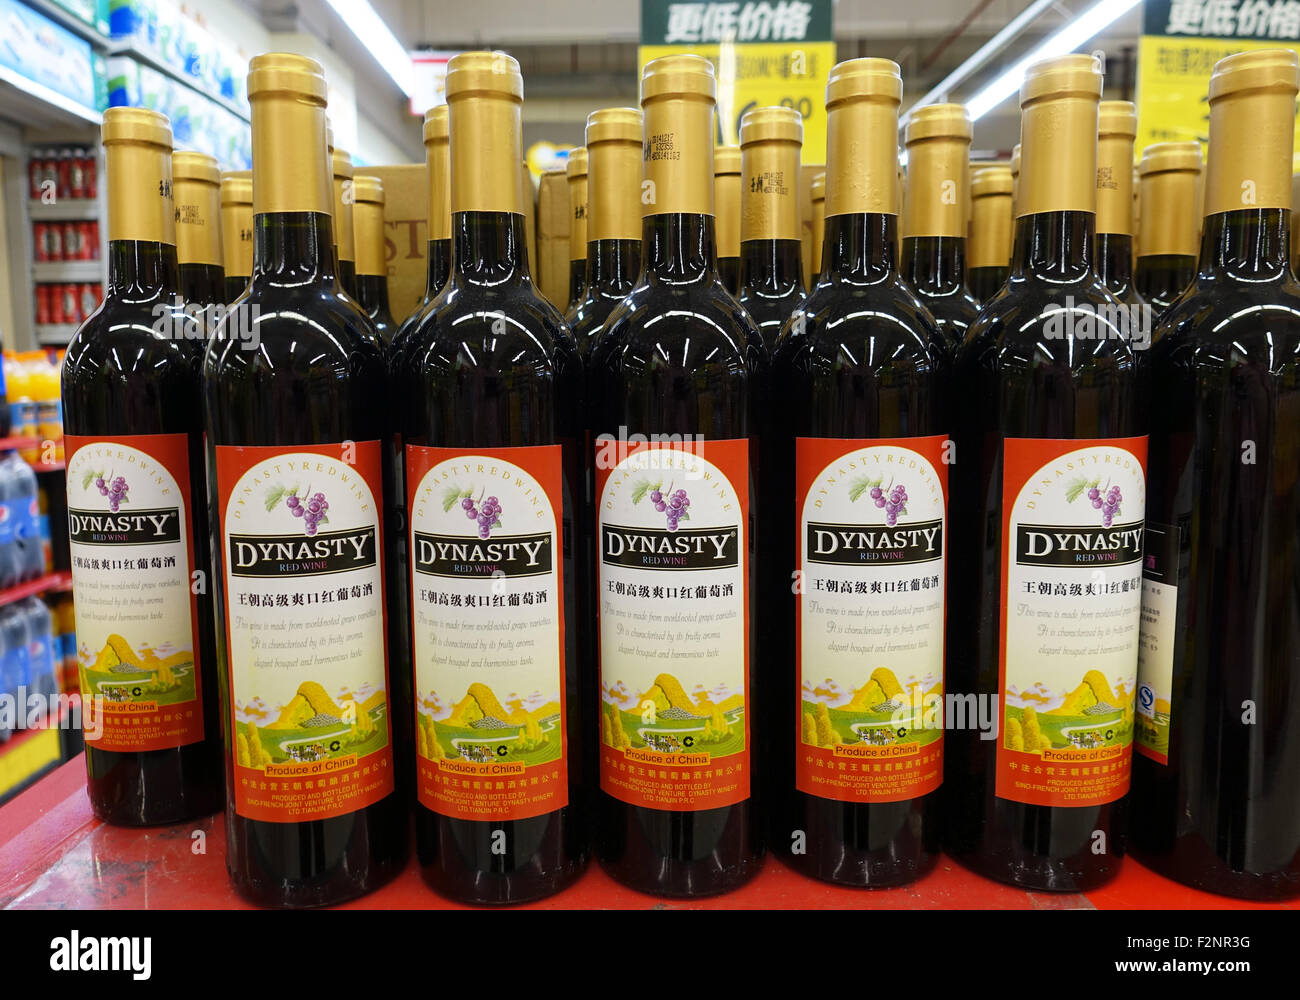 Shanghai, Chine. Août 31, 2015. Vin rouge dynastie qui a été produit à Tianjin (Chine) dans un supermarché à Shanghai, Chine, 31 août 2015. Photo : Jens Kalaene/dpa/Alamy Live News Banque D'Images